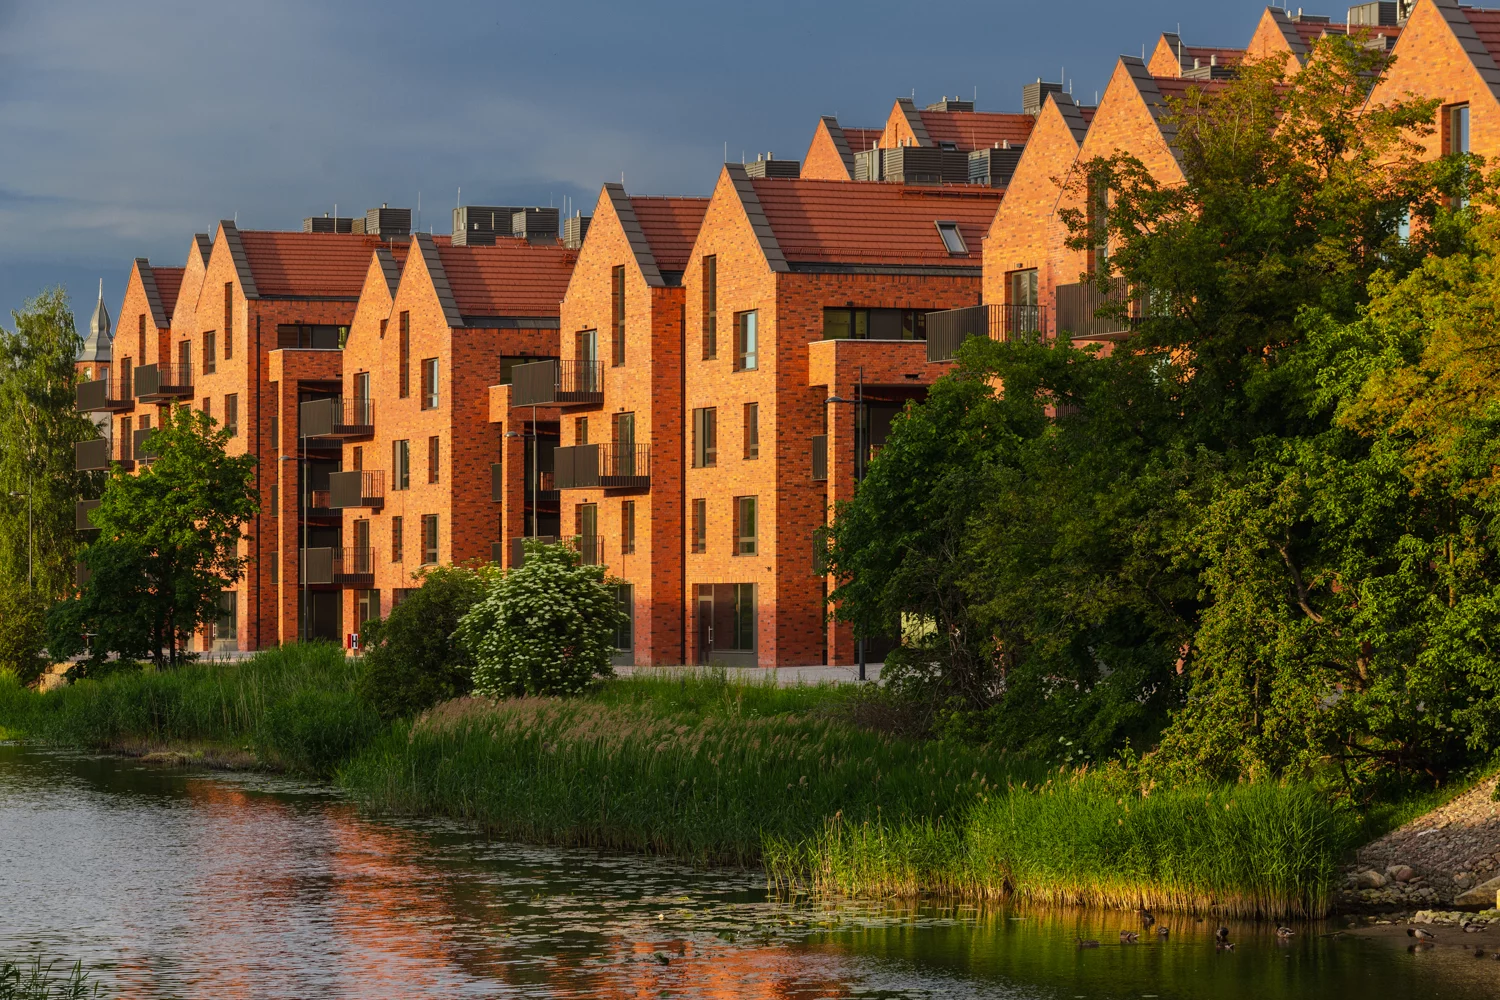 Mieszkania gotowe do zamieszkania ofertowane przez Vastint Poland mogą zrewolucjonizować rynek mieszkaniowy w Polsce